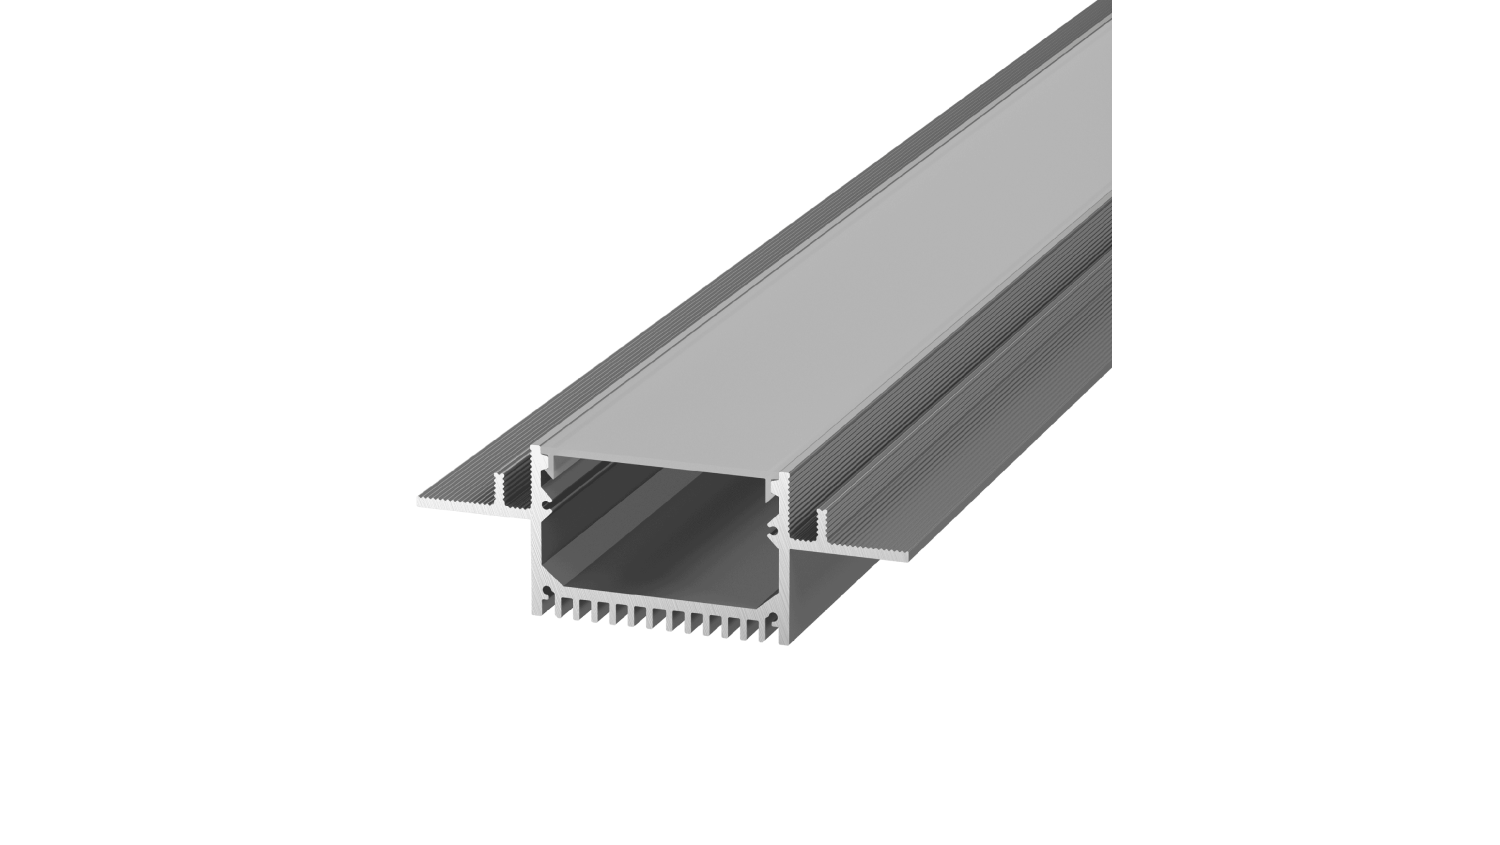 Алюминиевый профиль Design LED без видимой рамки LG49, 2500 мм, анодированный DesignLed 010362 010362